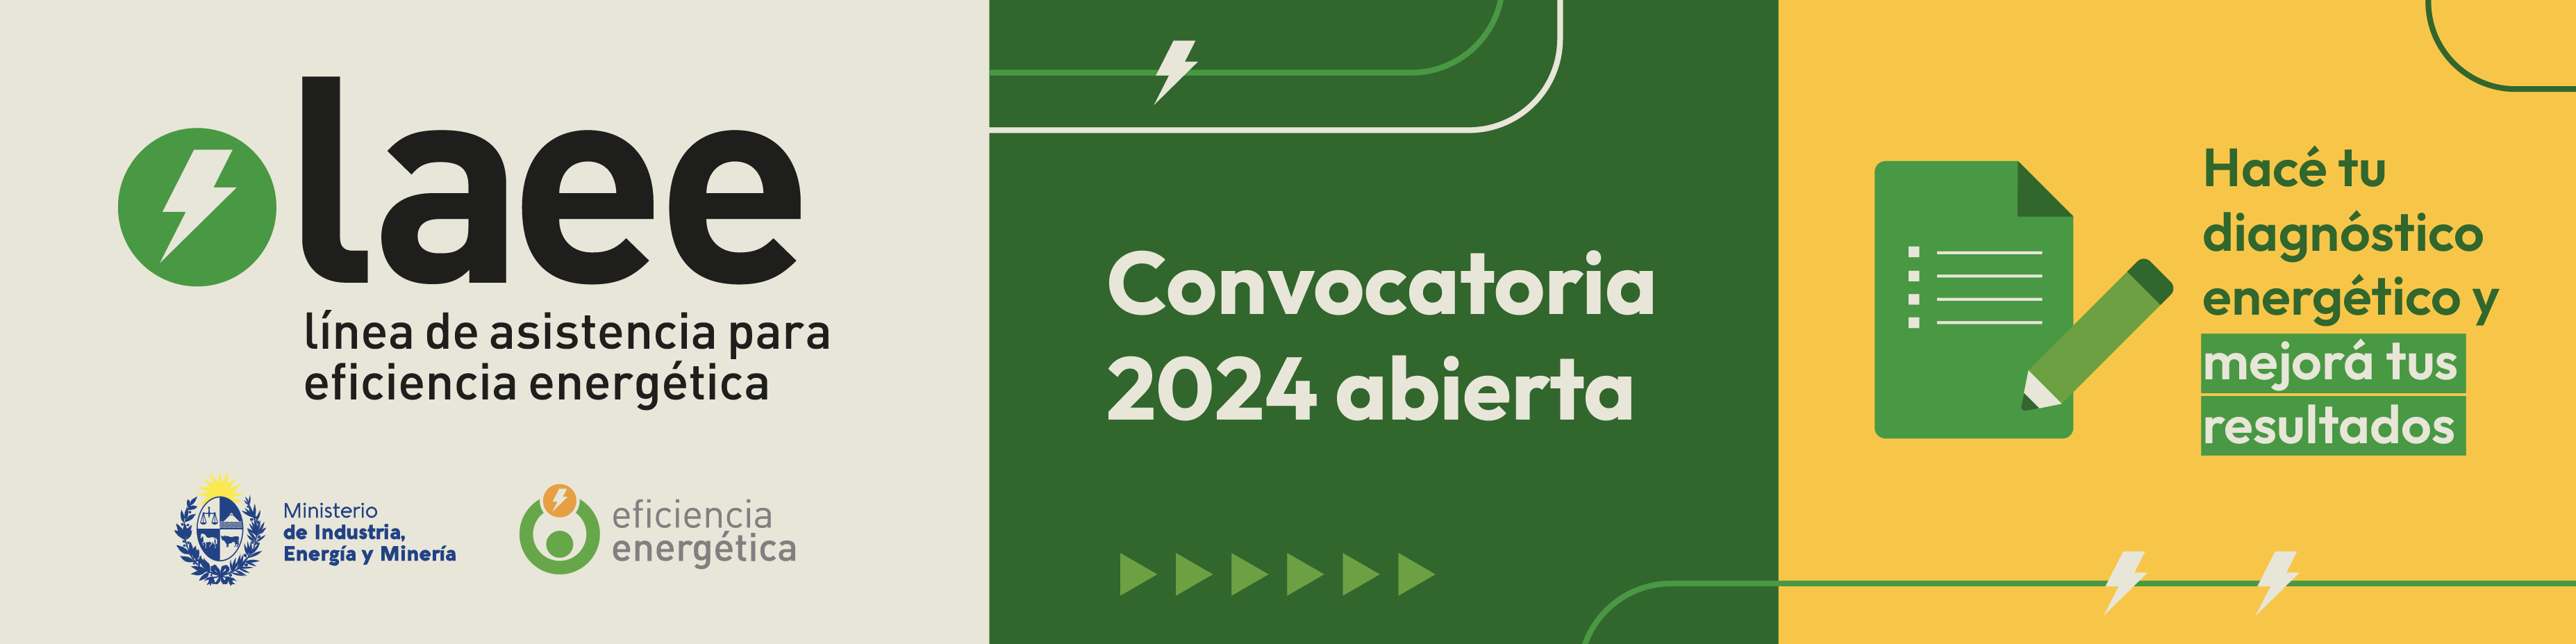 Convocatoria 2024 de la Línea de Asistencia para eficiencia energética